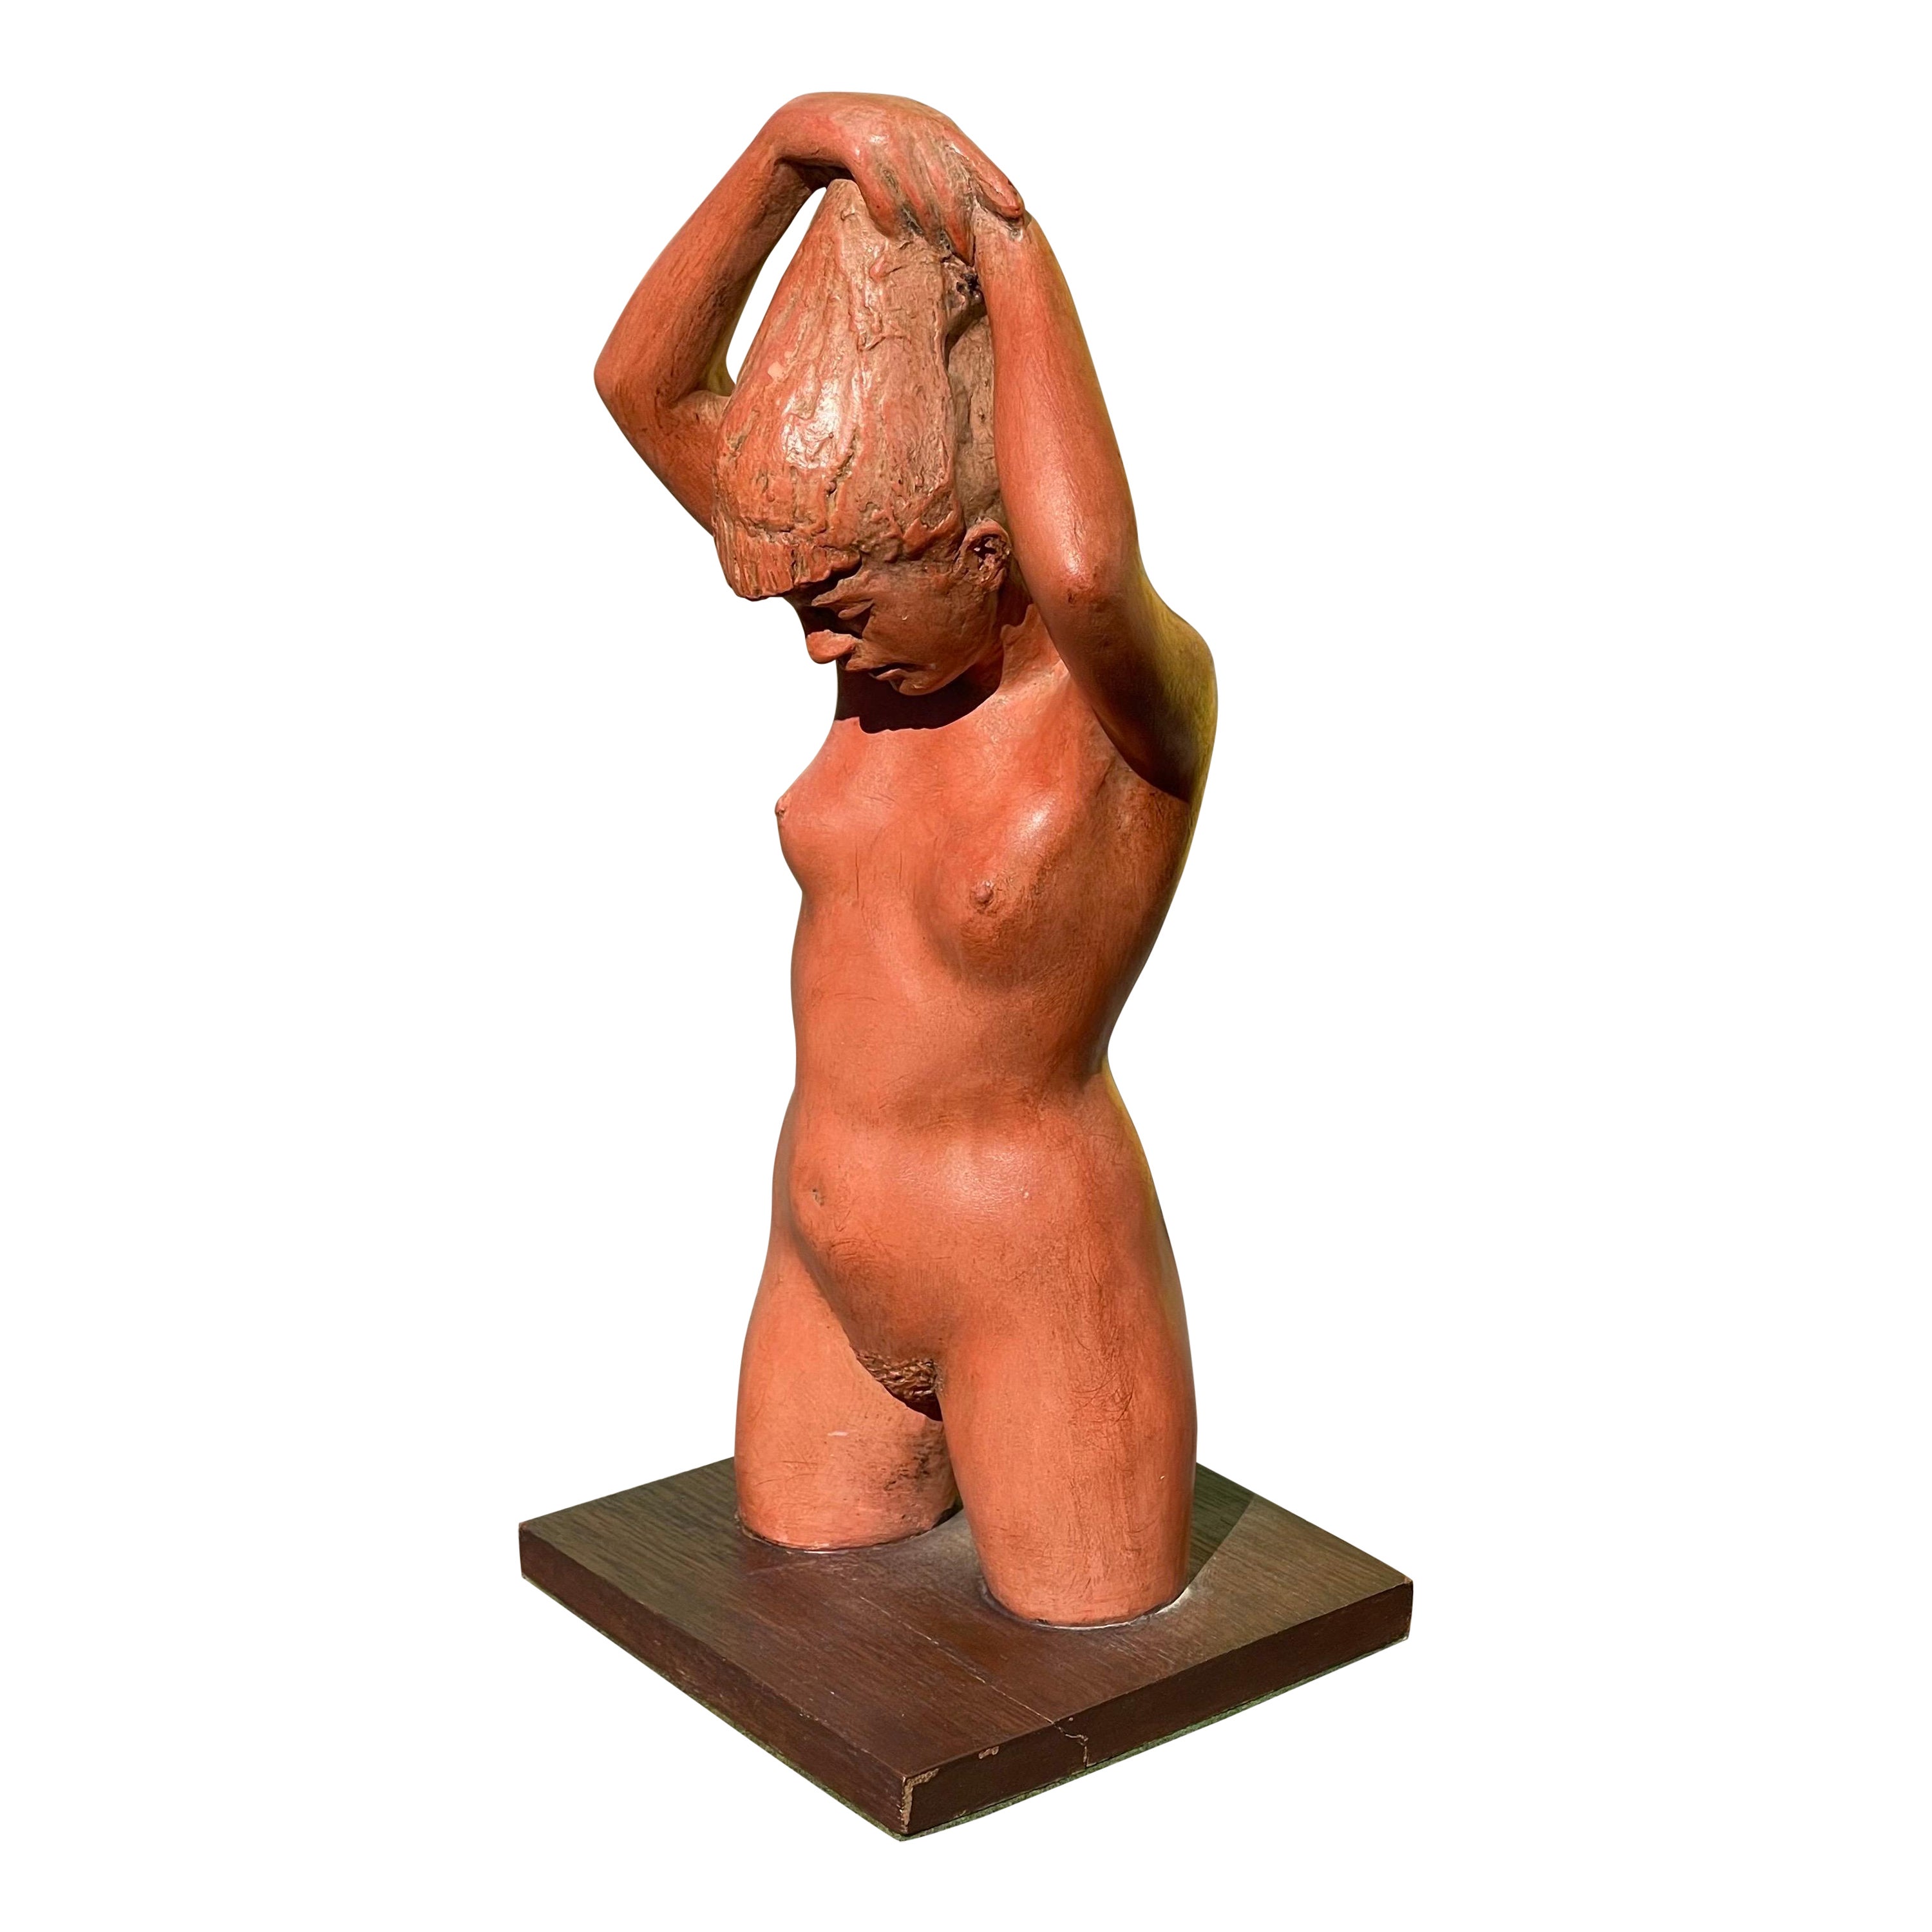 Joe Brown, 1909-1985, Figurative Nude Clay Sculpture For Sale